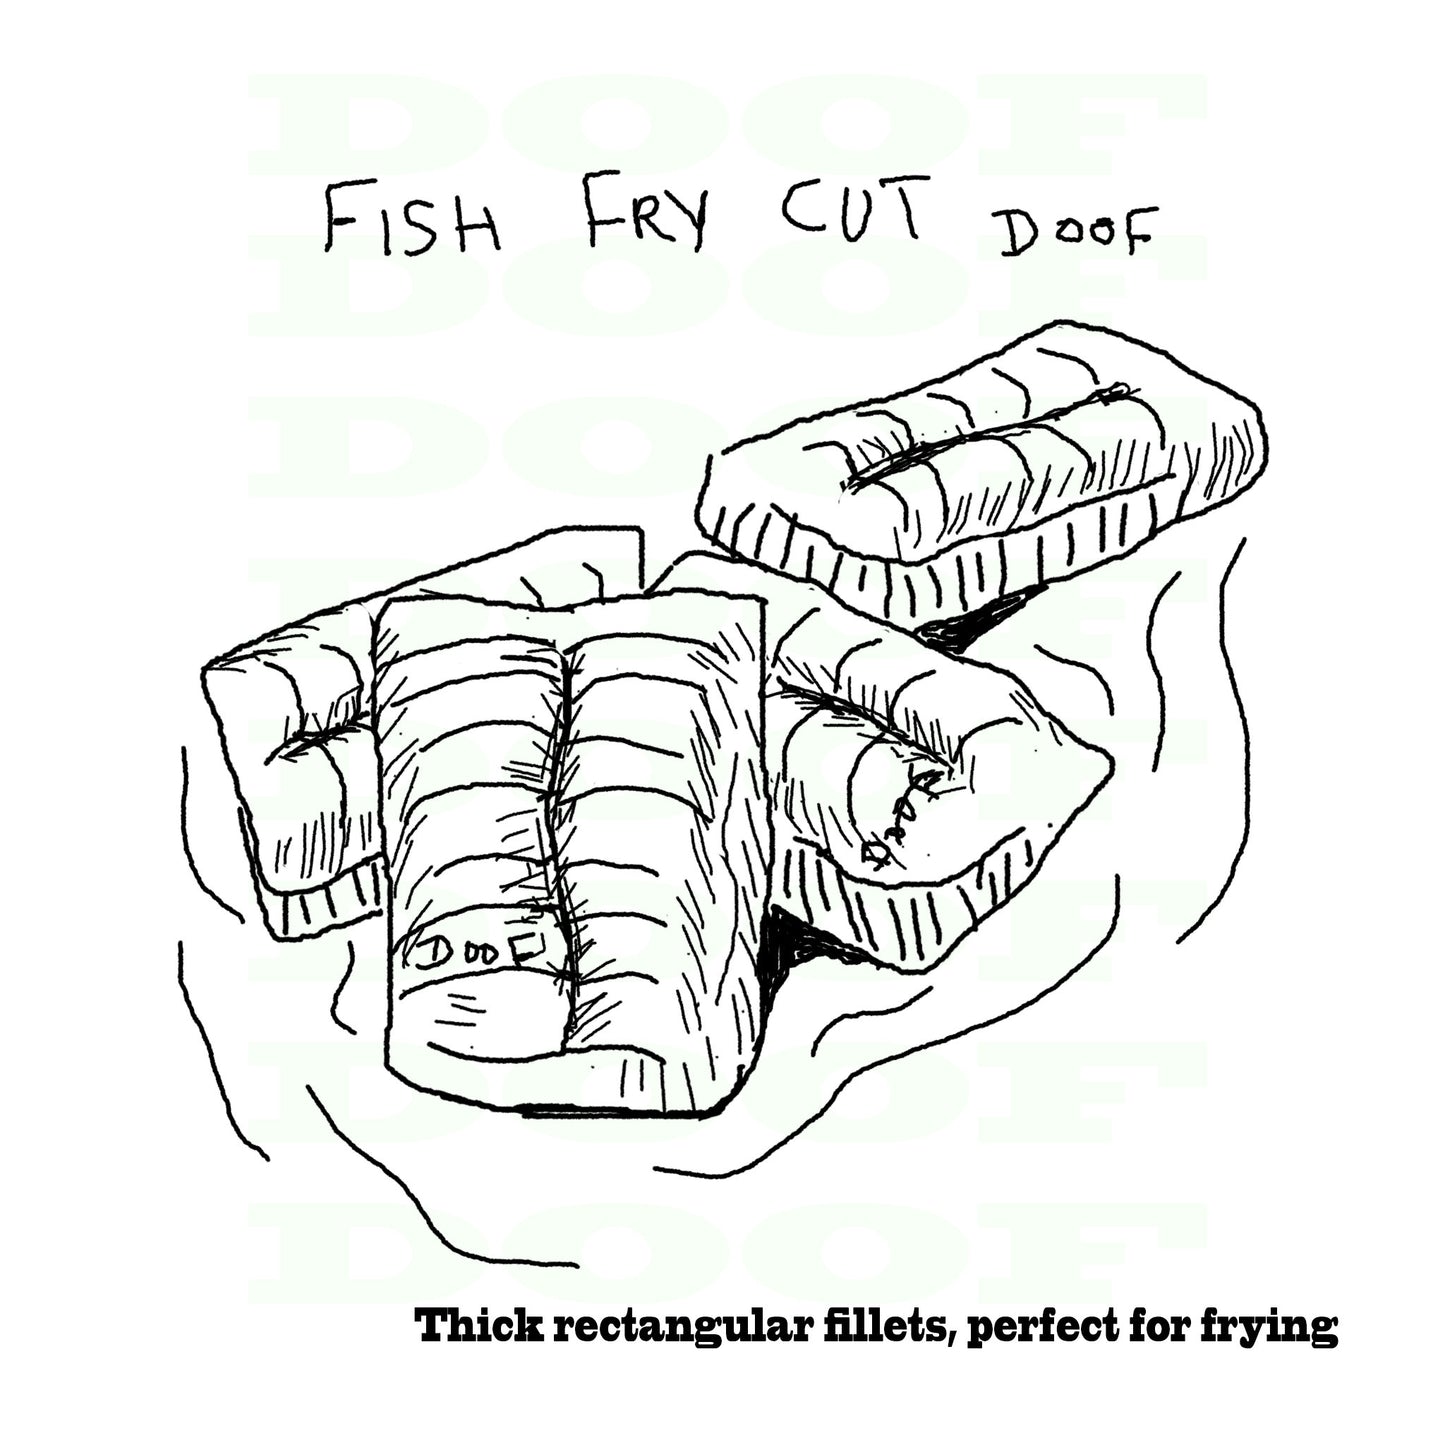 fish fry cut Doof sketch